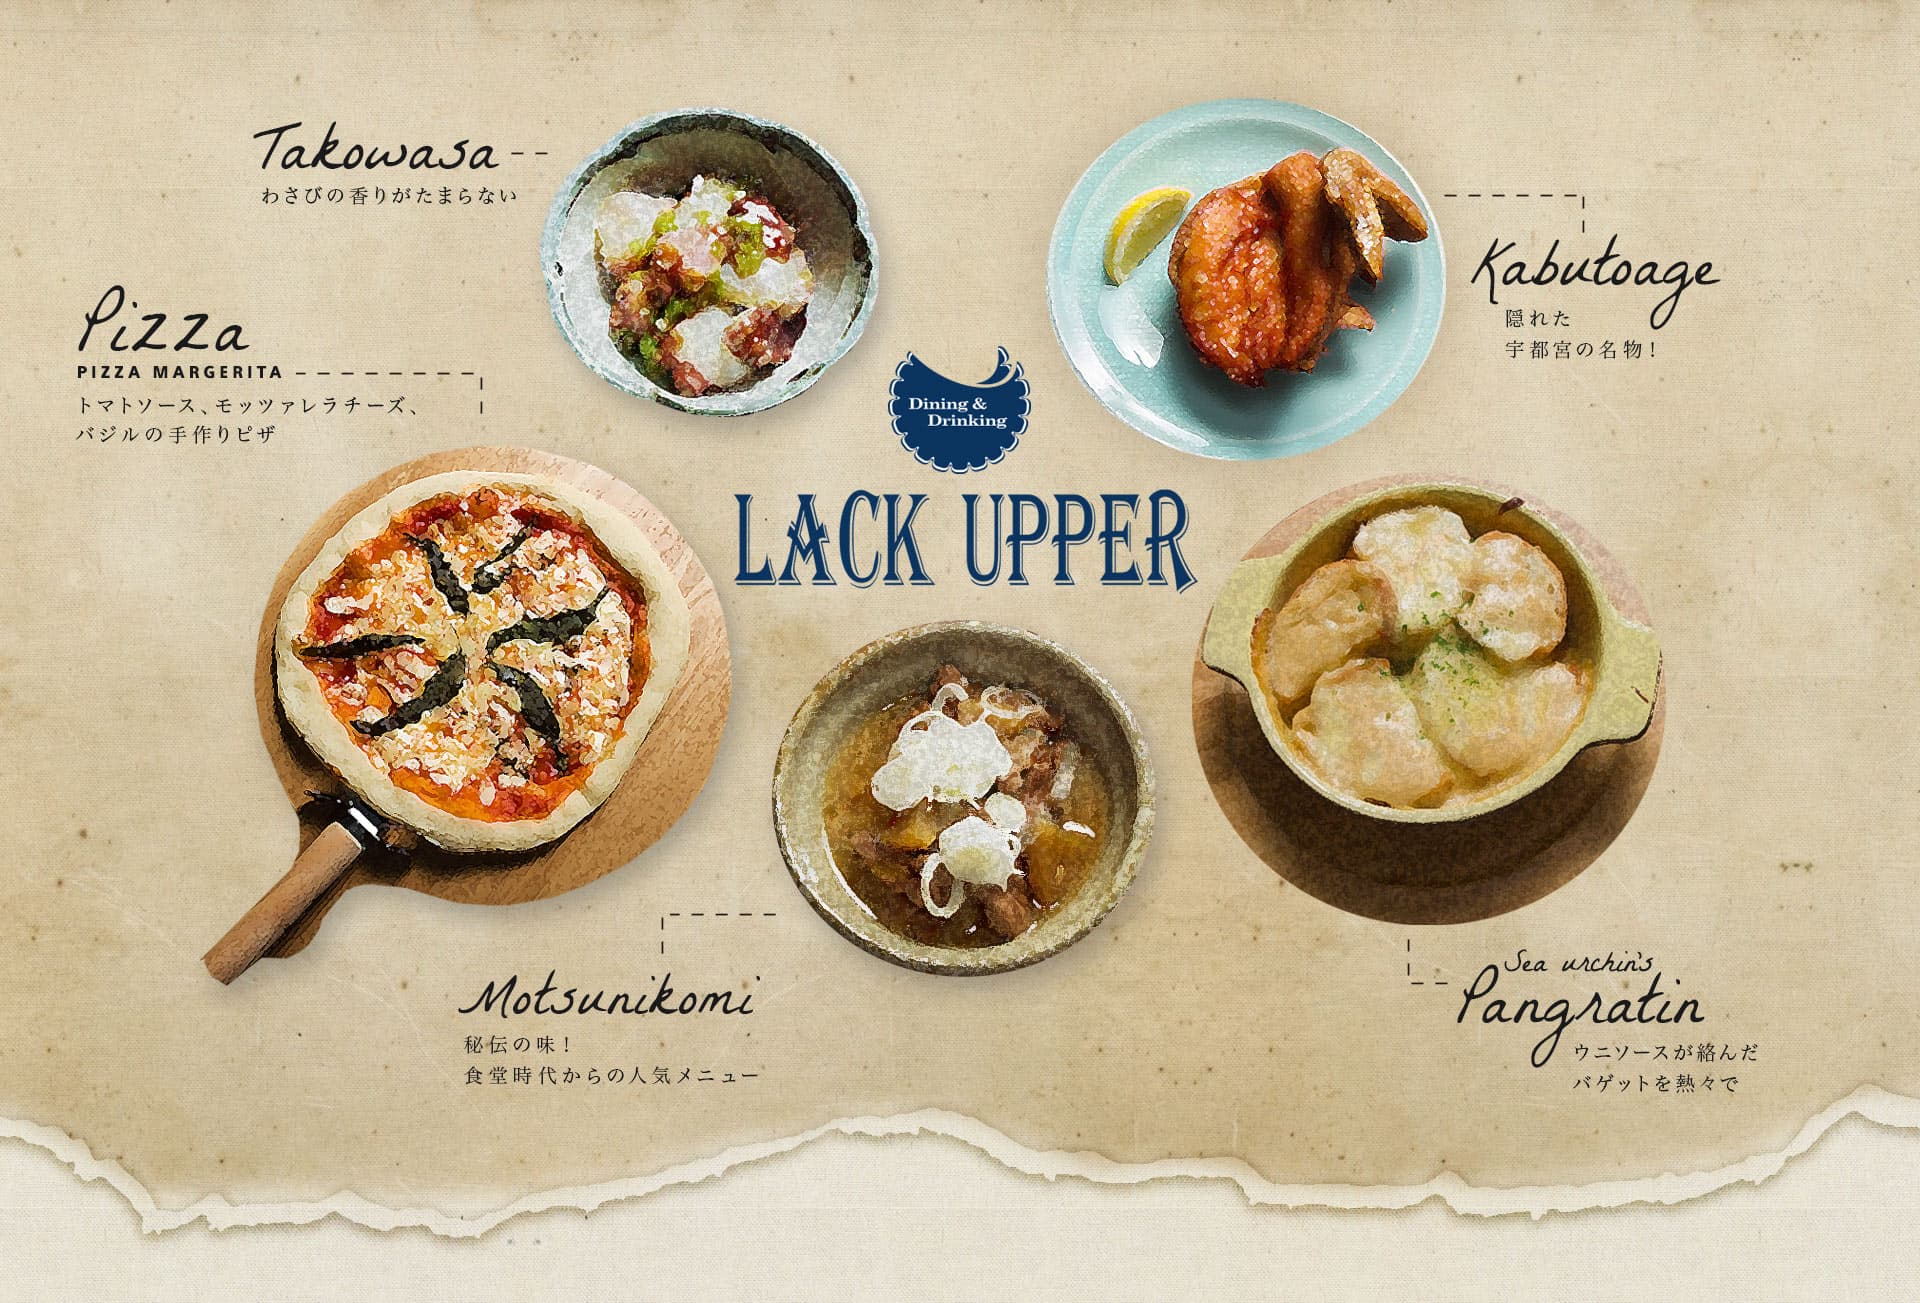 LACK UPPERでは、和食や洋食、ランチ、ディナーなど様々な料理が楽しめます